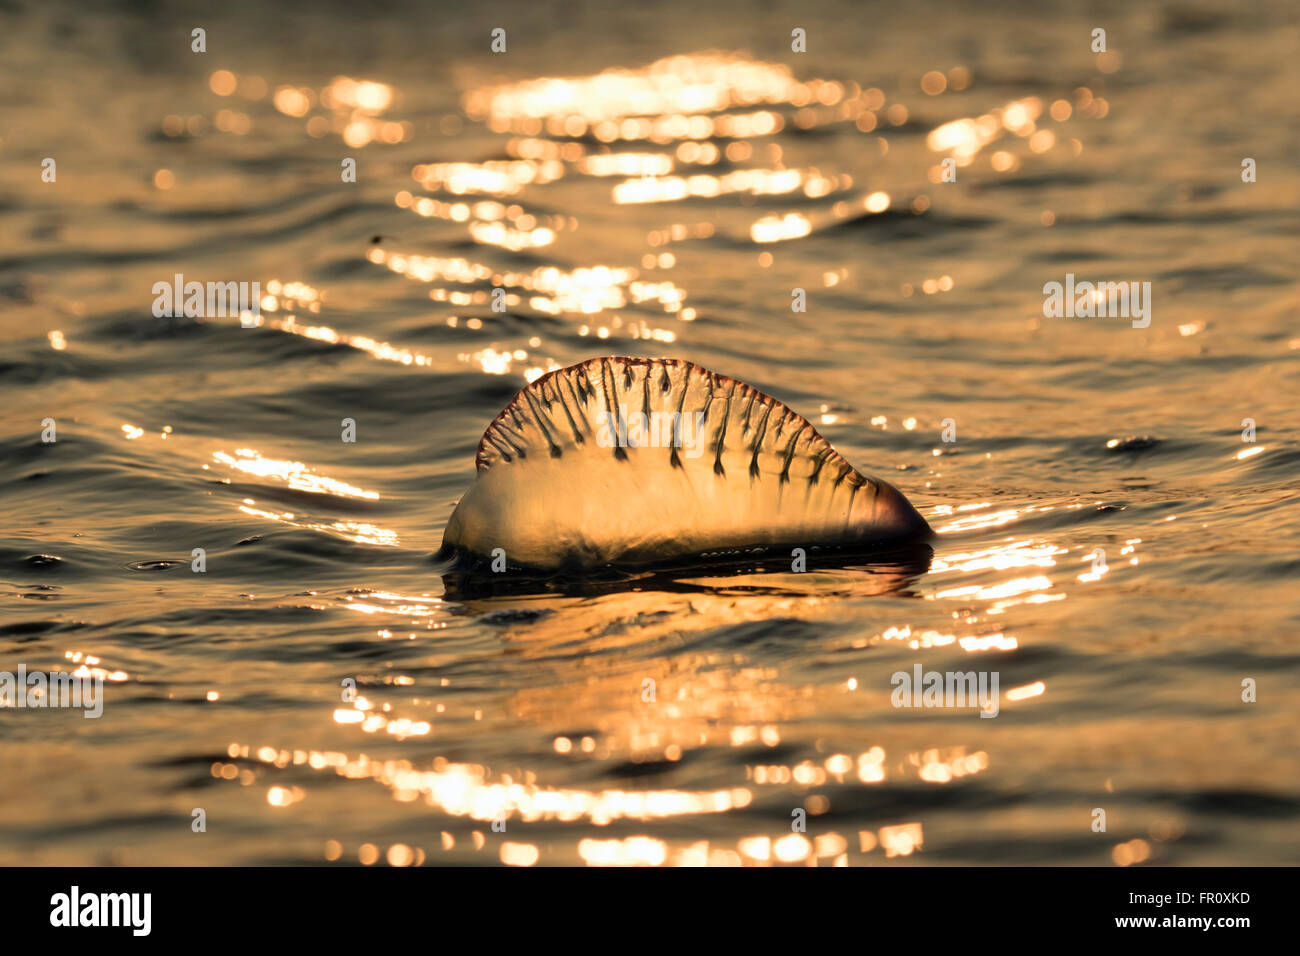 Atlantico uomo portoghese o' guerra (Physalia physalis) galleggianti nell'oceano al tramonto, Galveston, Texas, Stati Uniti d'America Foto Stock